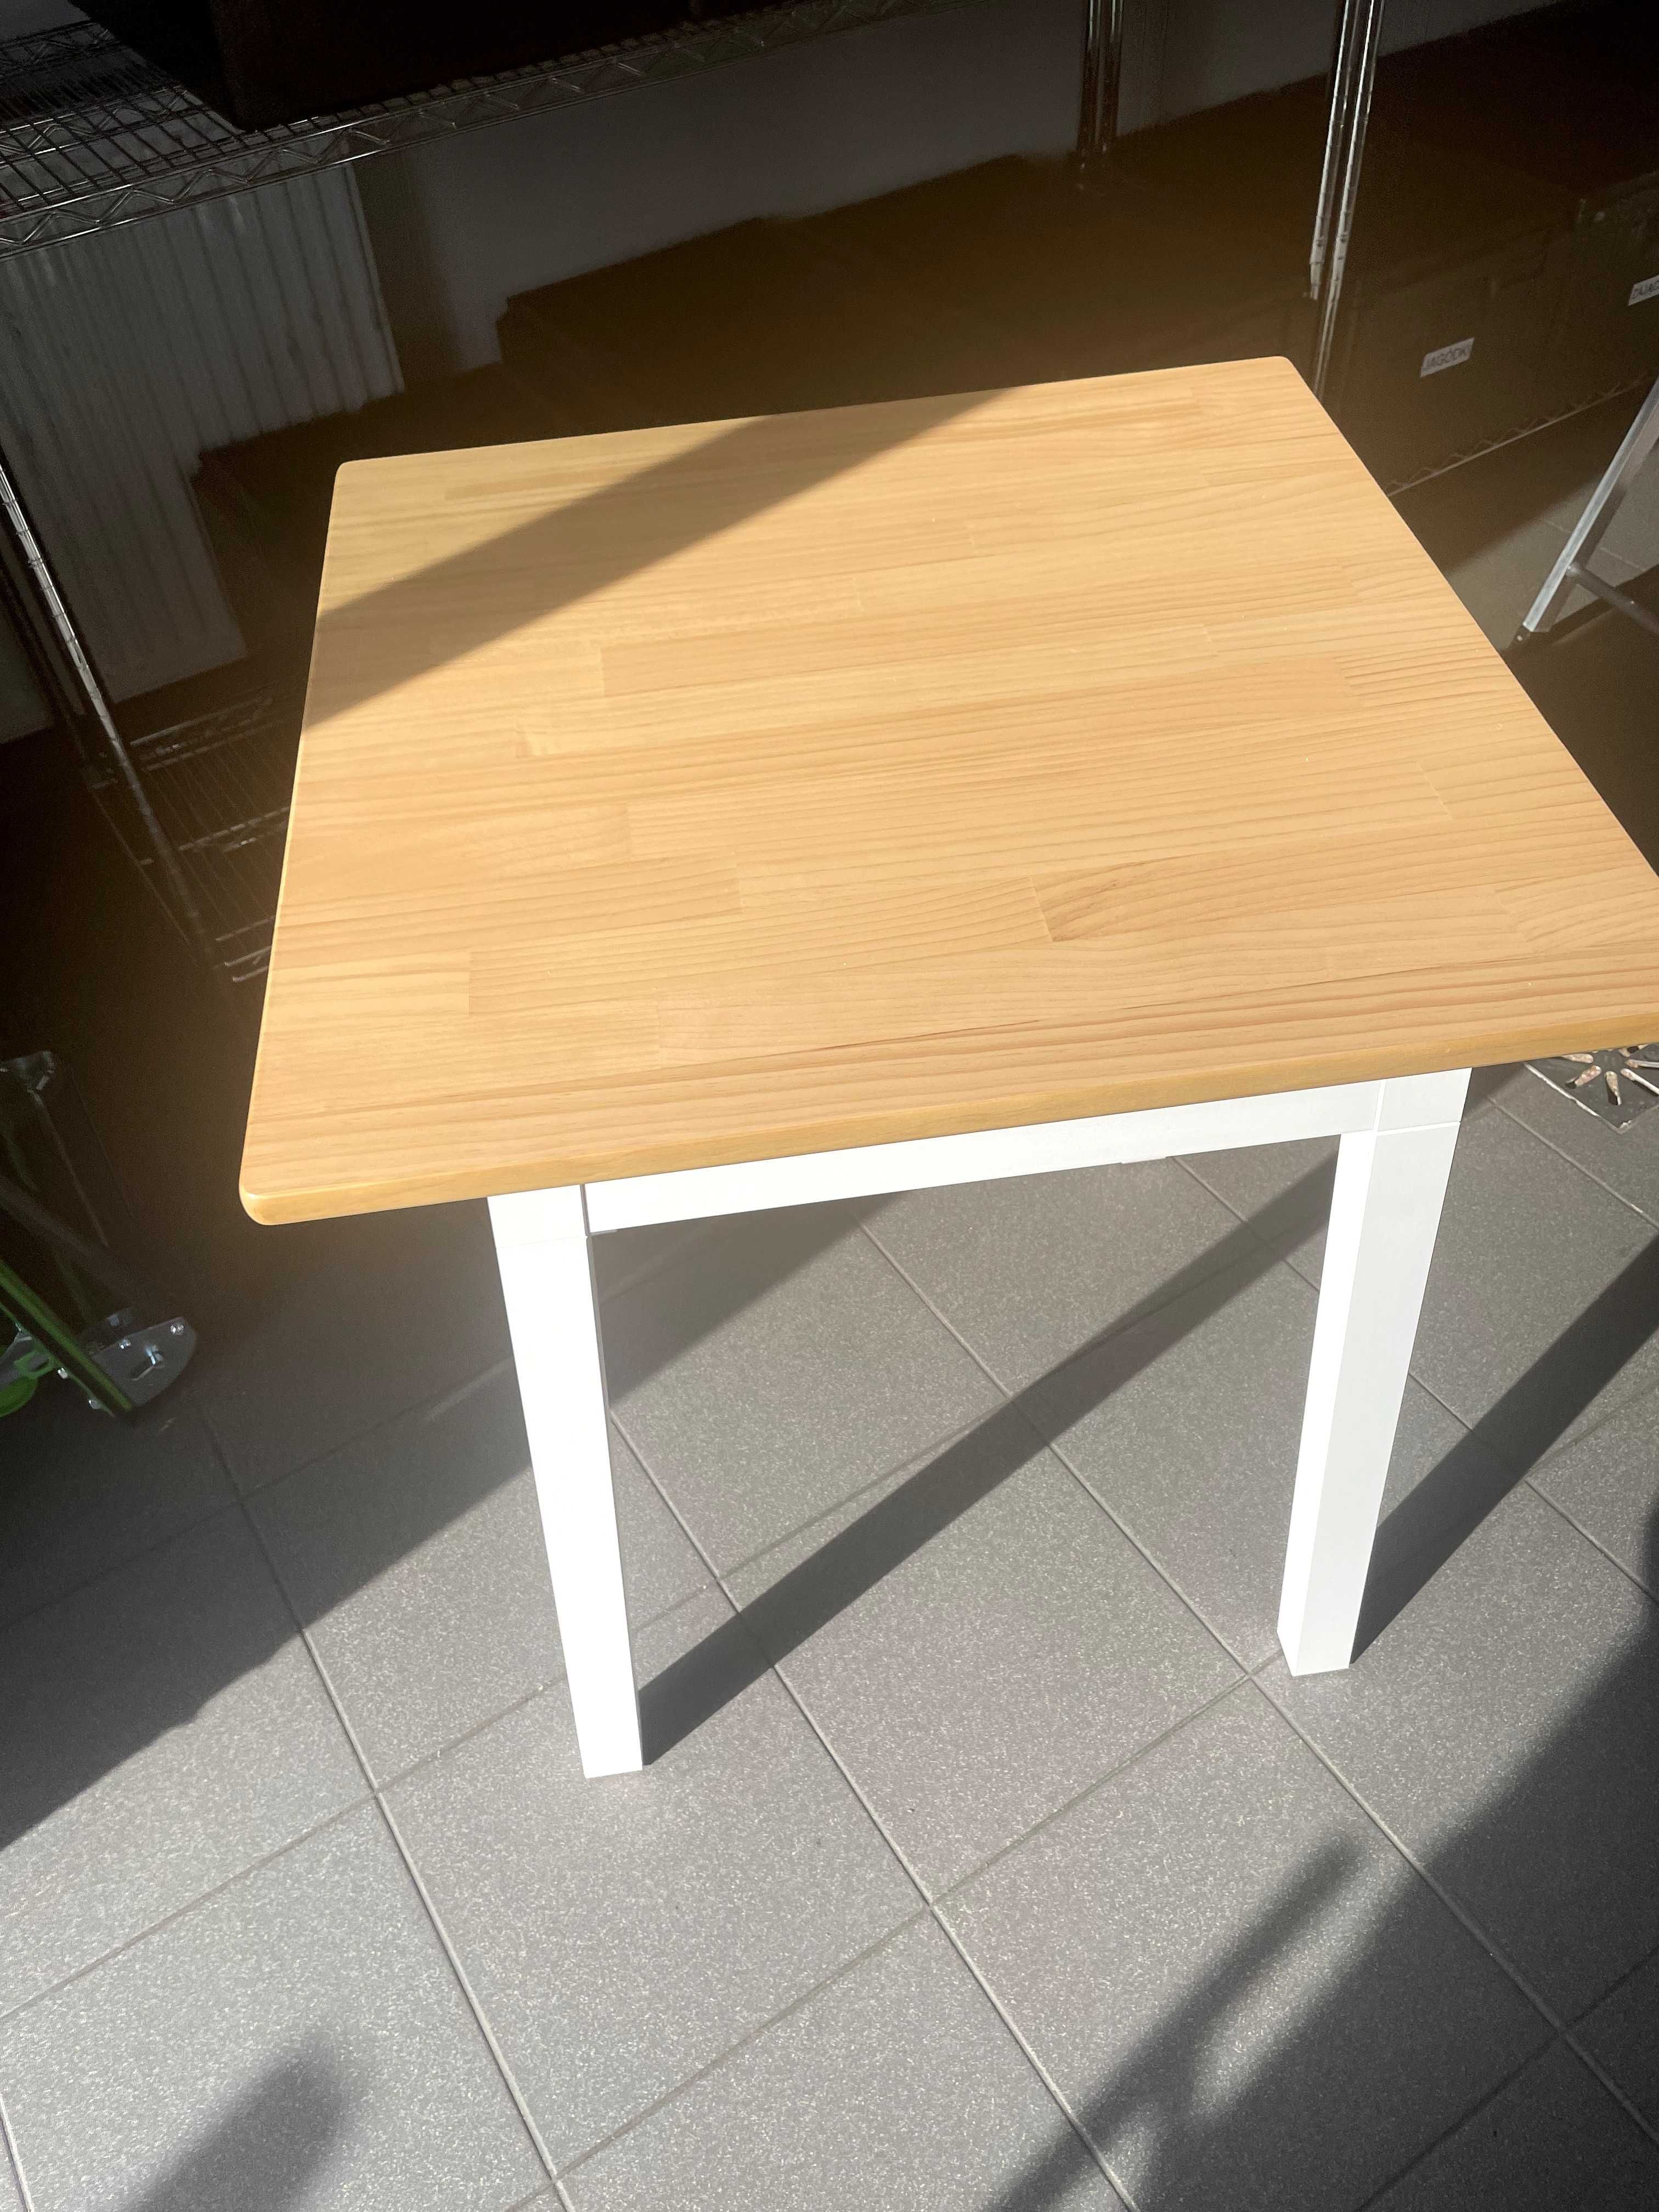 PINNTORP
Stół, bejca jasnobrązowa/biała bejca, 65x65 cm